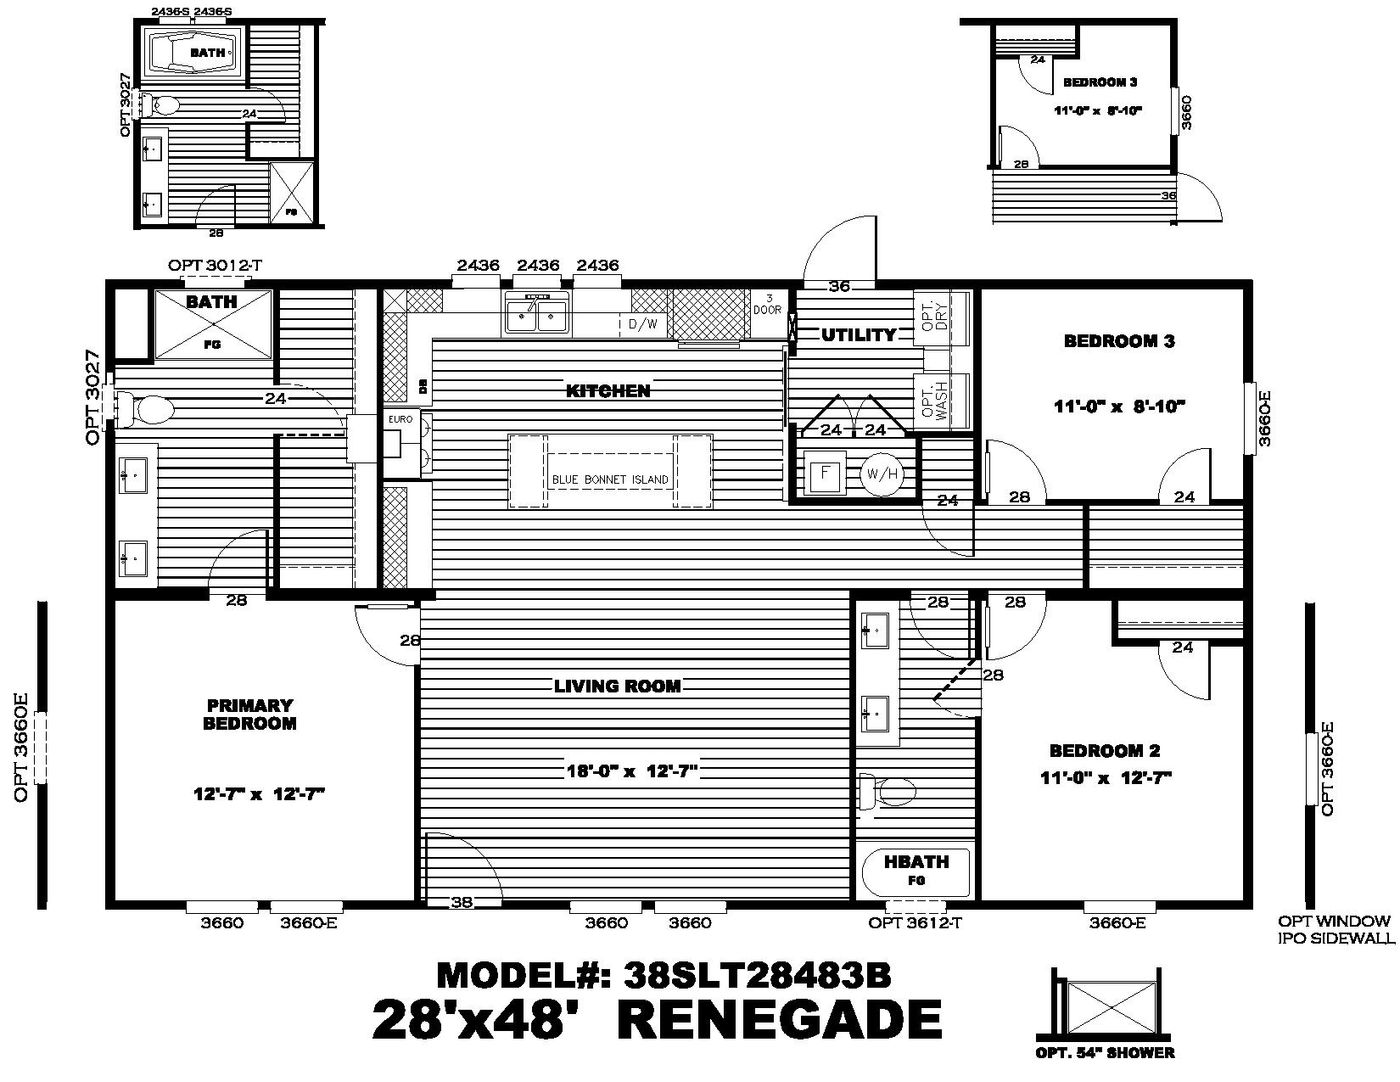 The Renegade Floorplan